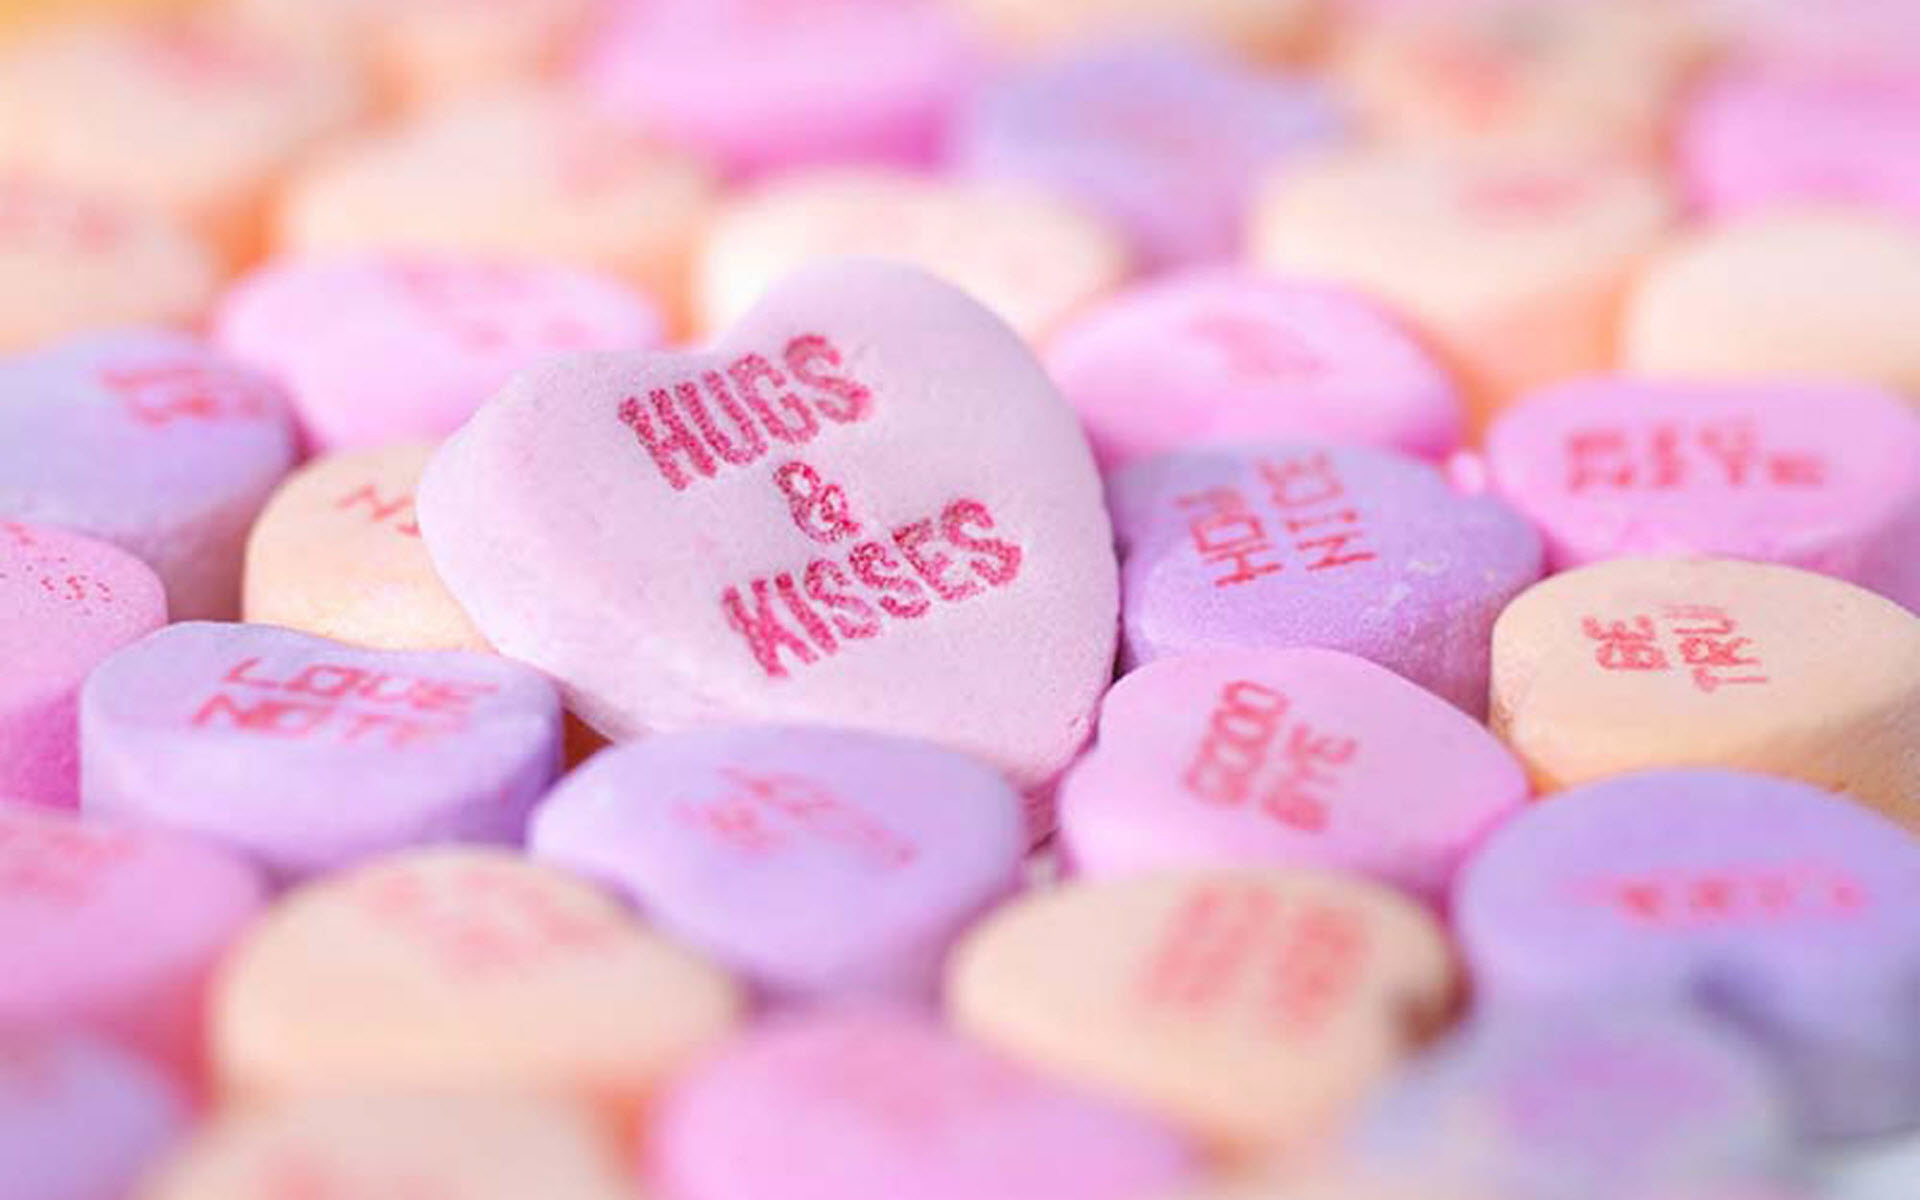 Hugs & Kisses9773014005 - Hugs & Kisses - Kisses, Hugs, abstract